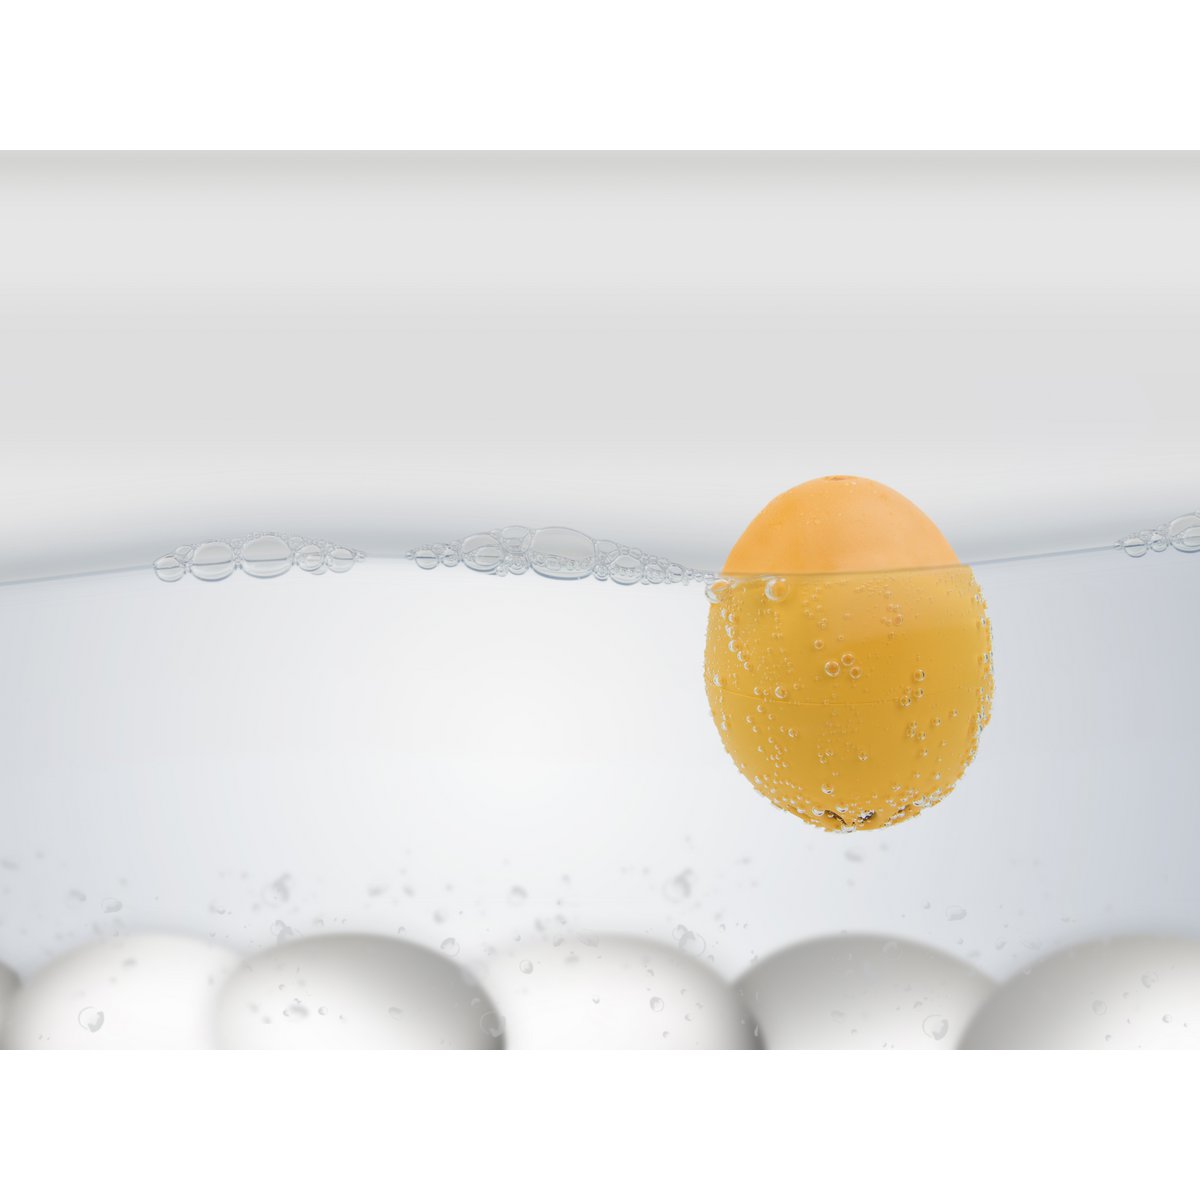 Temporizador para Cocer Huevos Beep Egg